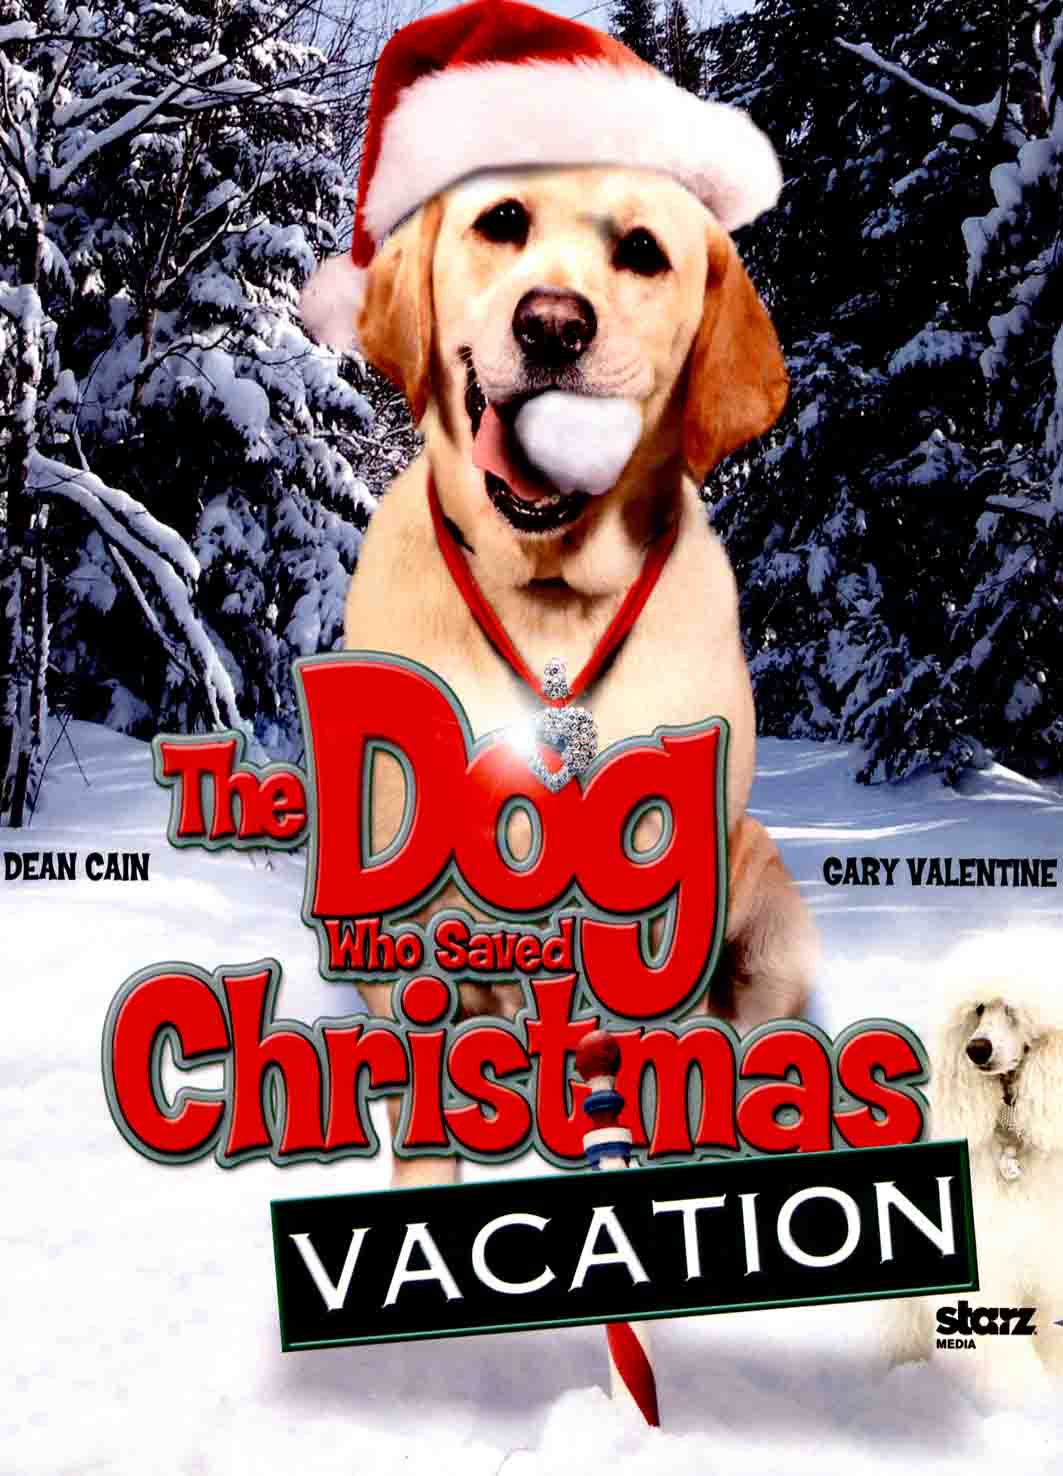 The Dog Who Saved Christmas' Vacation